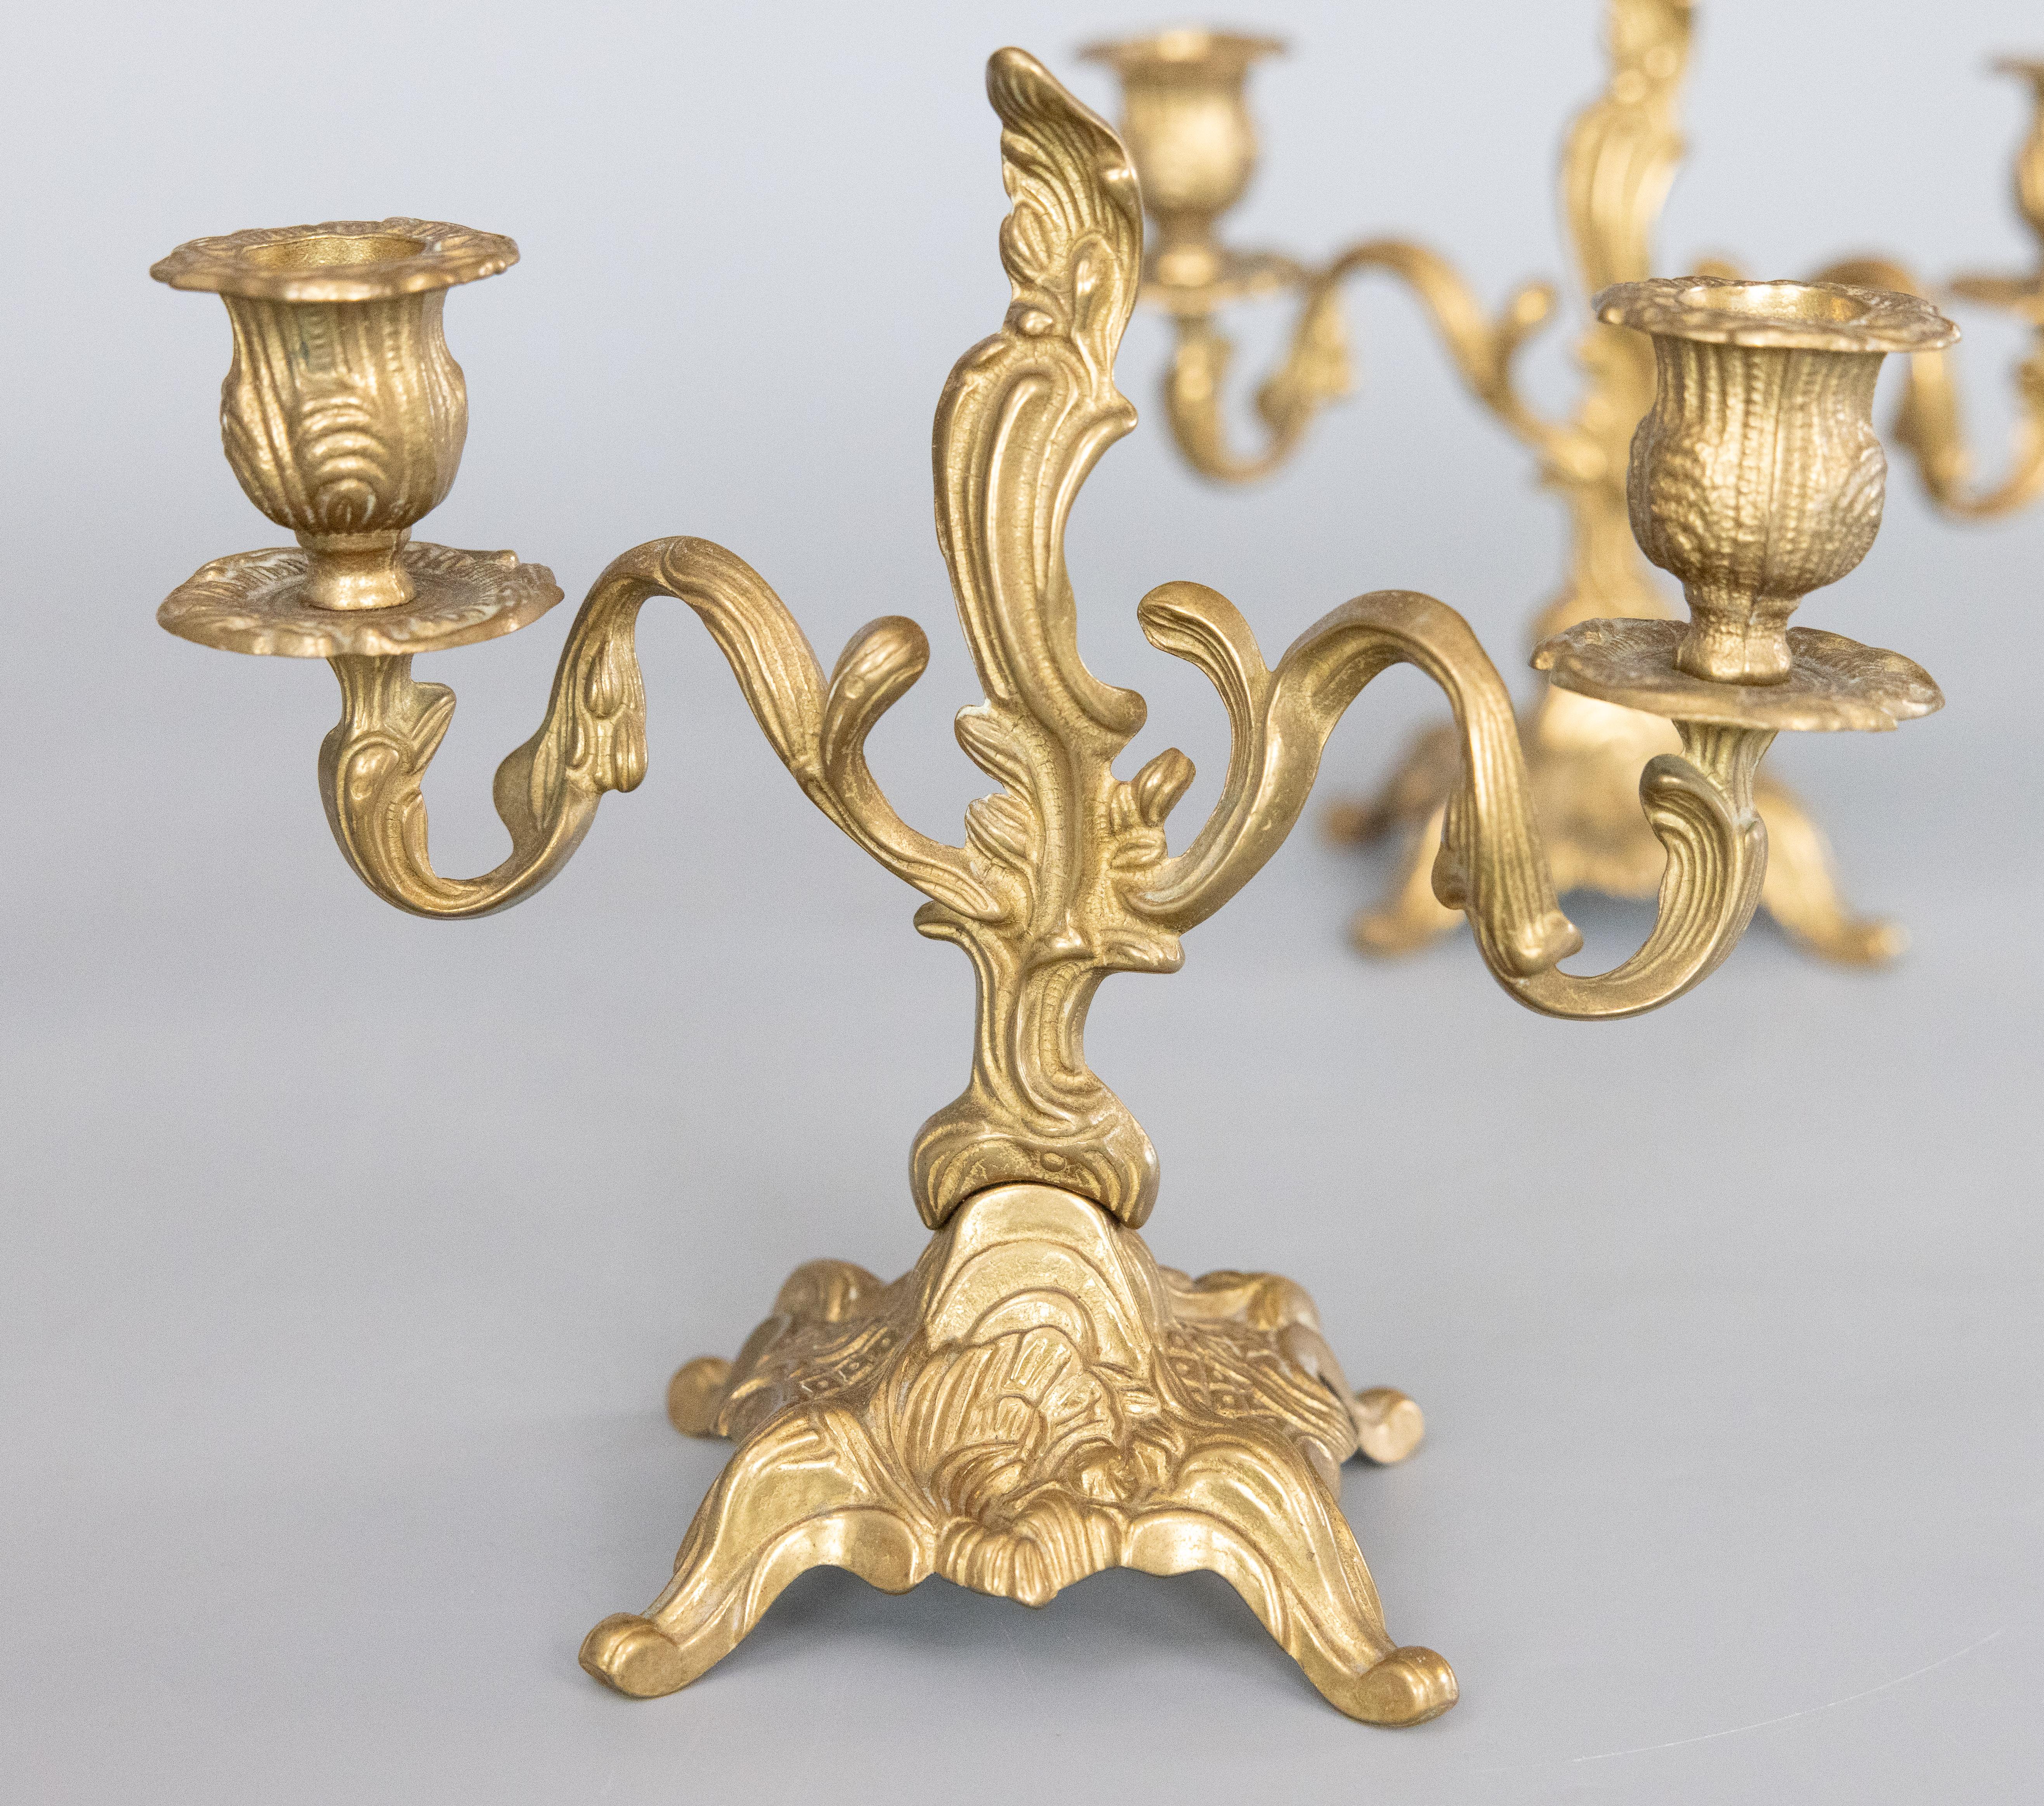 Magnifique paire de candélabres à deux bras en laiton doré de style Rococo italien, vers 1950. Marqué 